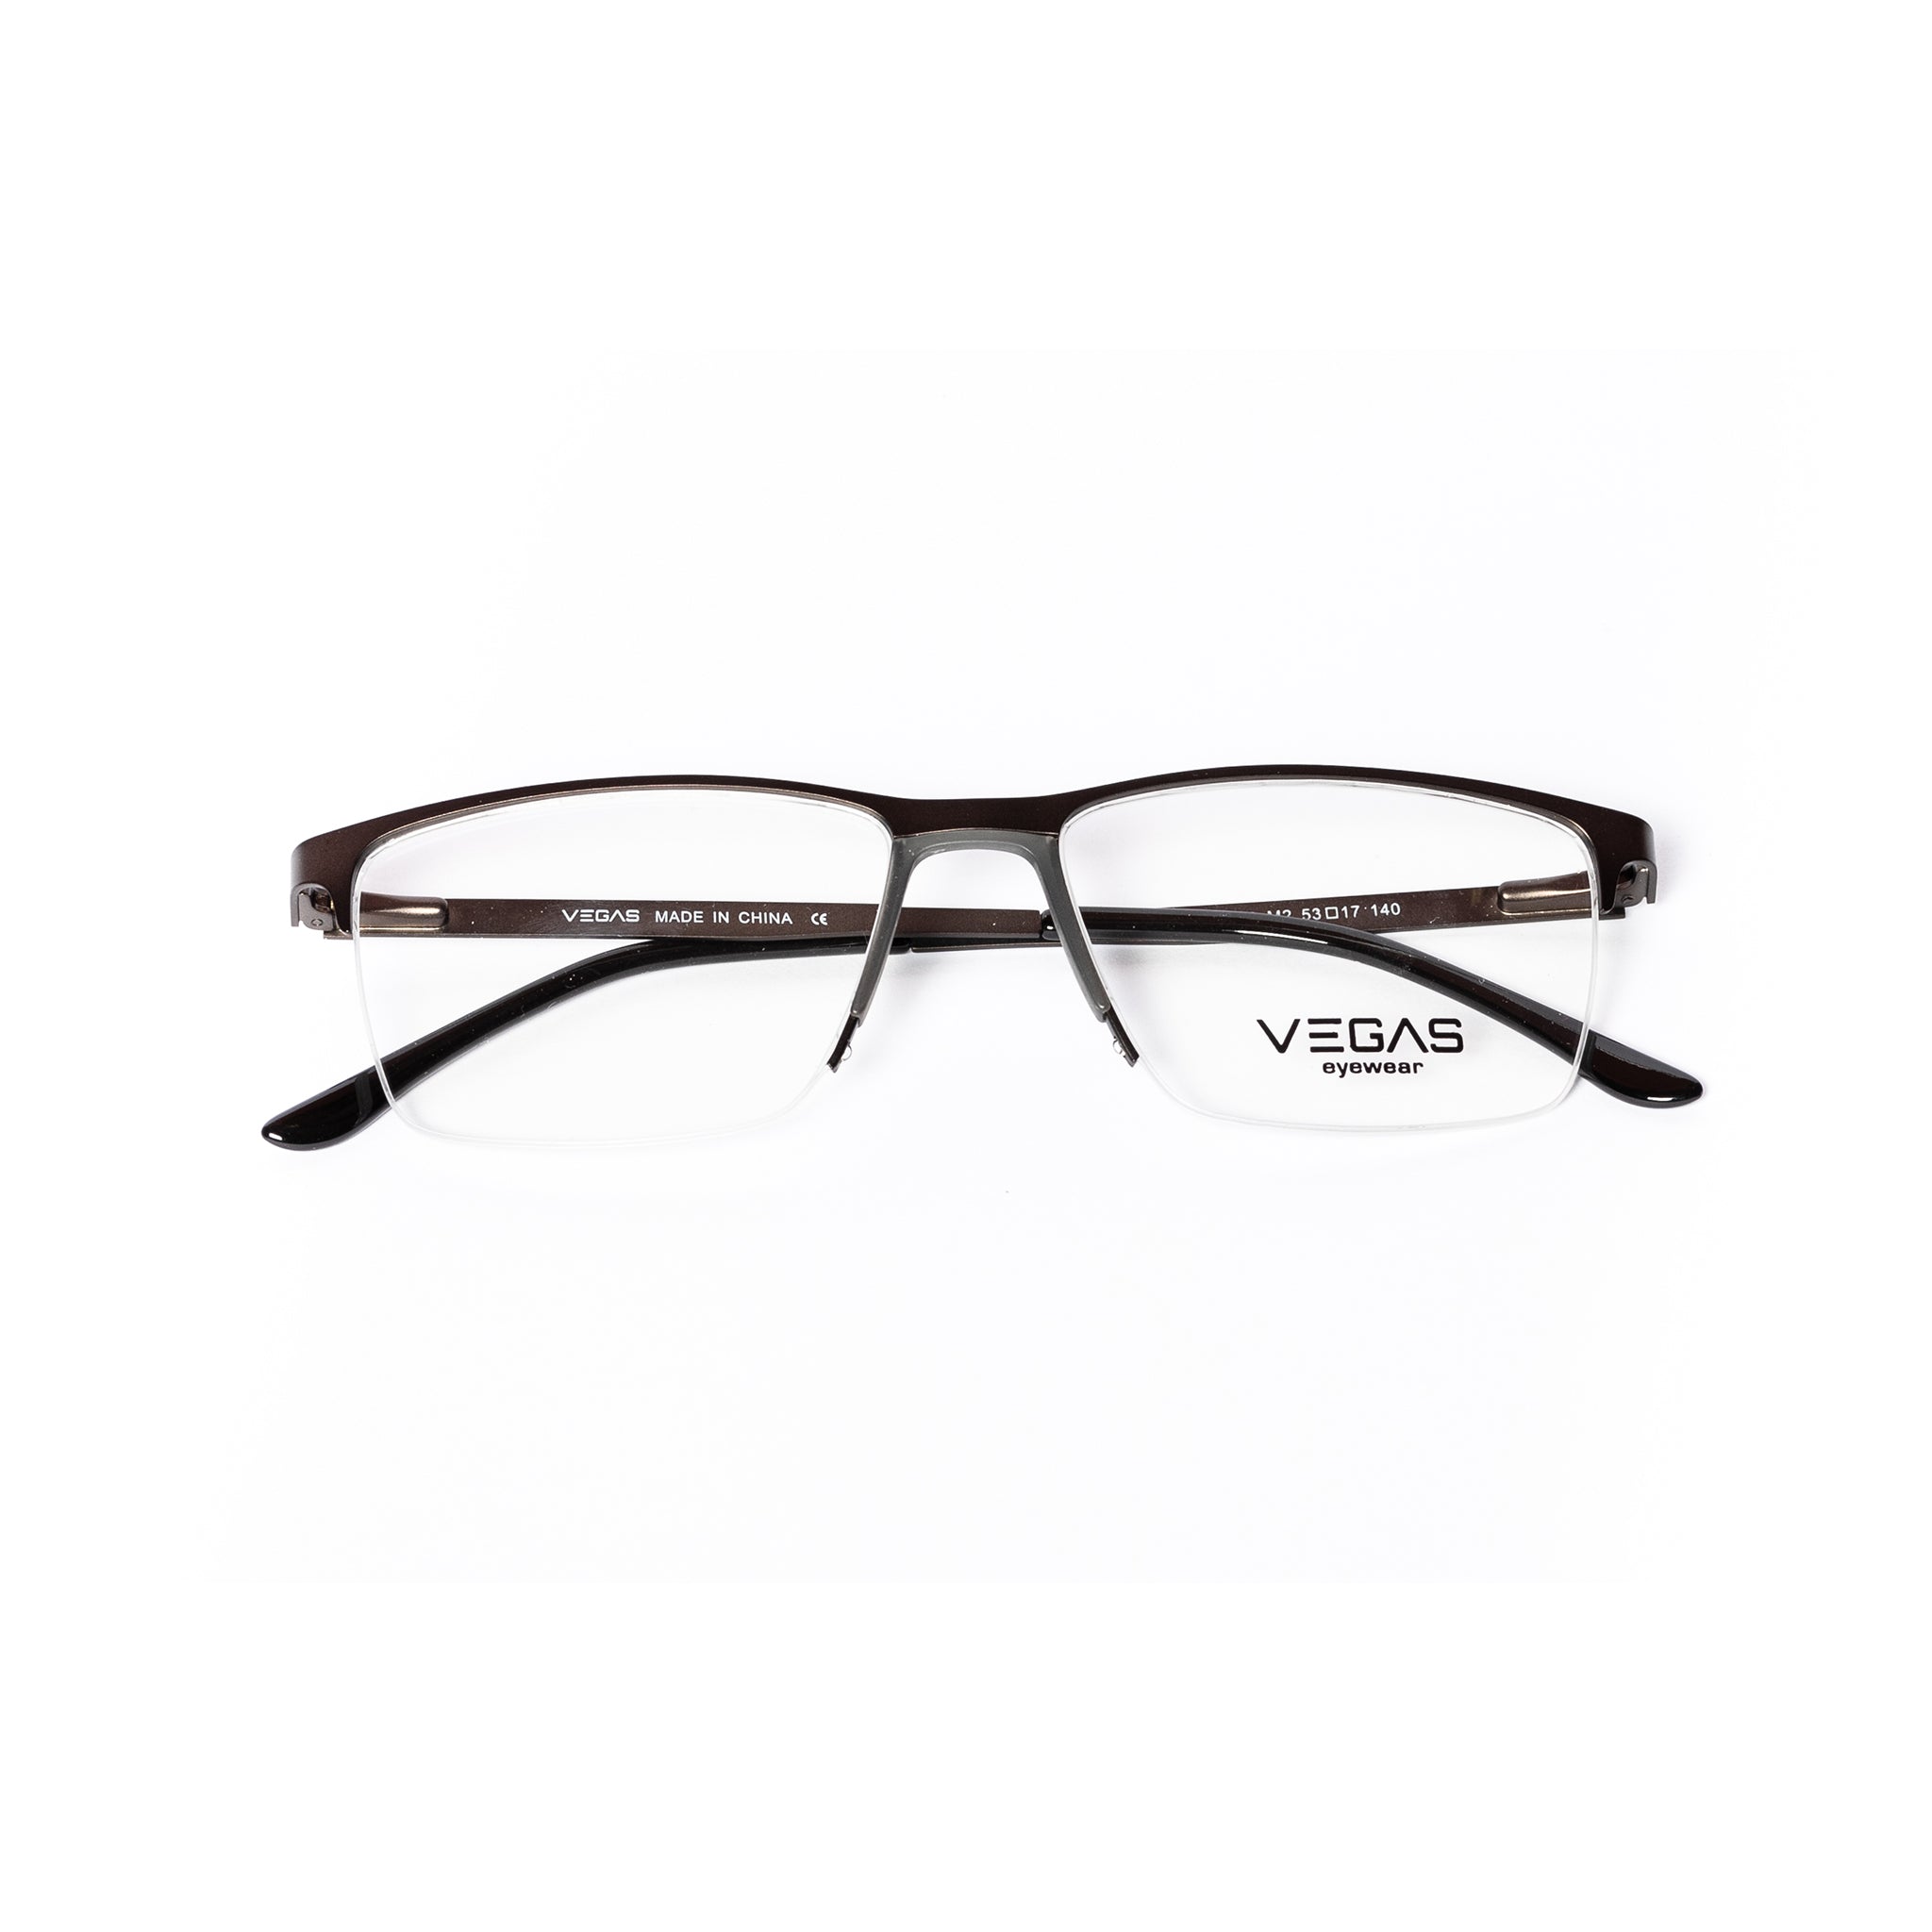 VEGAS P8509 - COC Eyewear